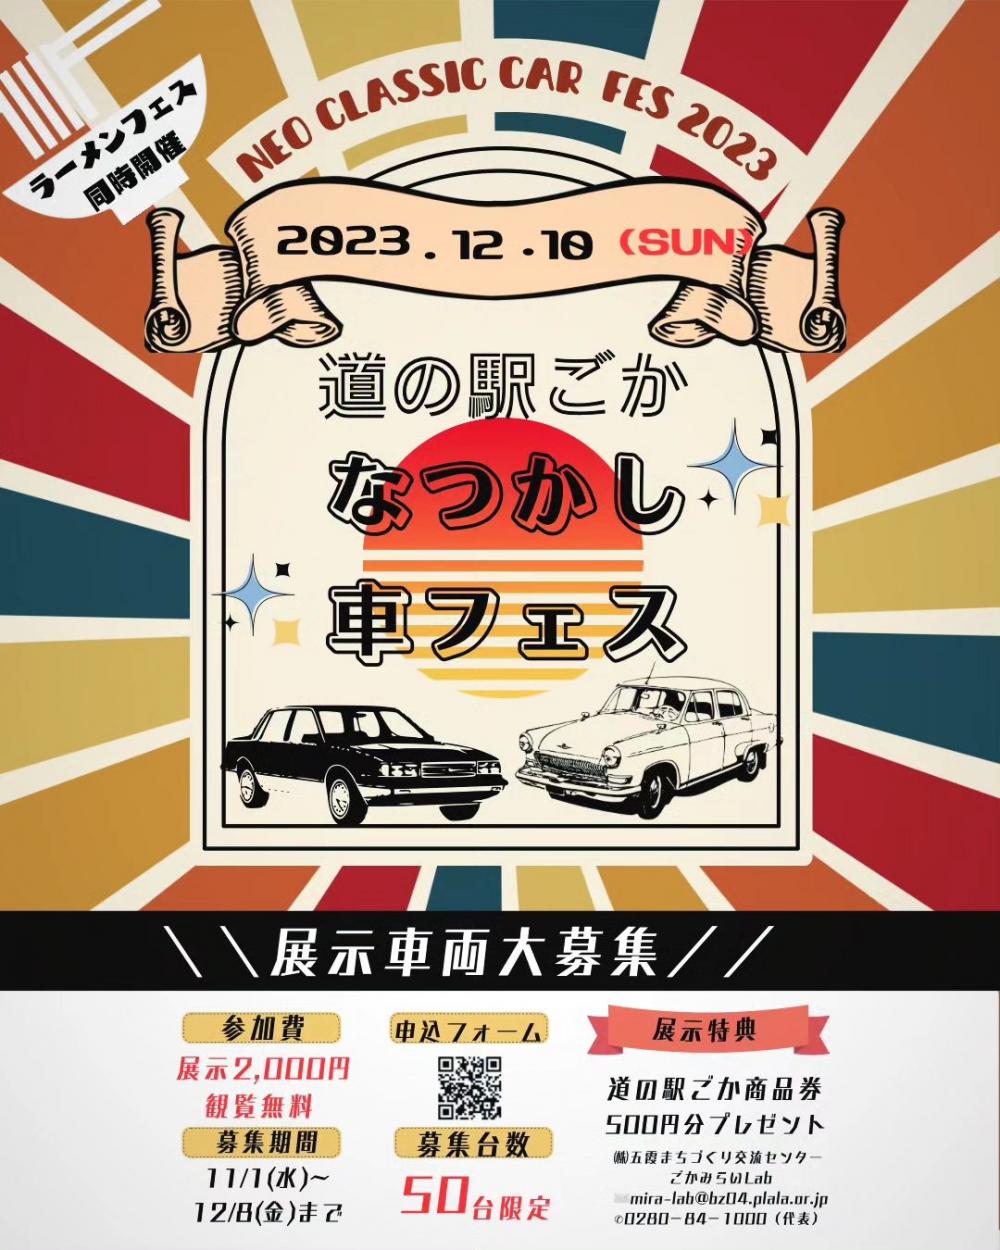 【展示車両募集】ネオクラシックカー☆なつかし車フェス2023に関するページ